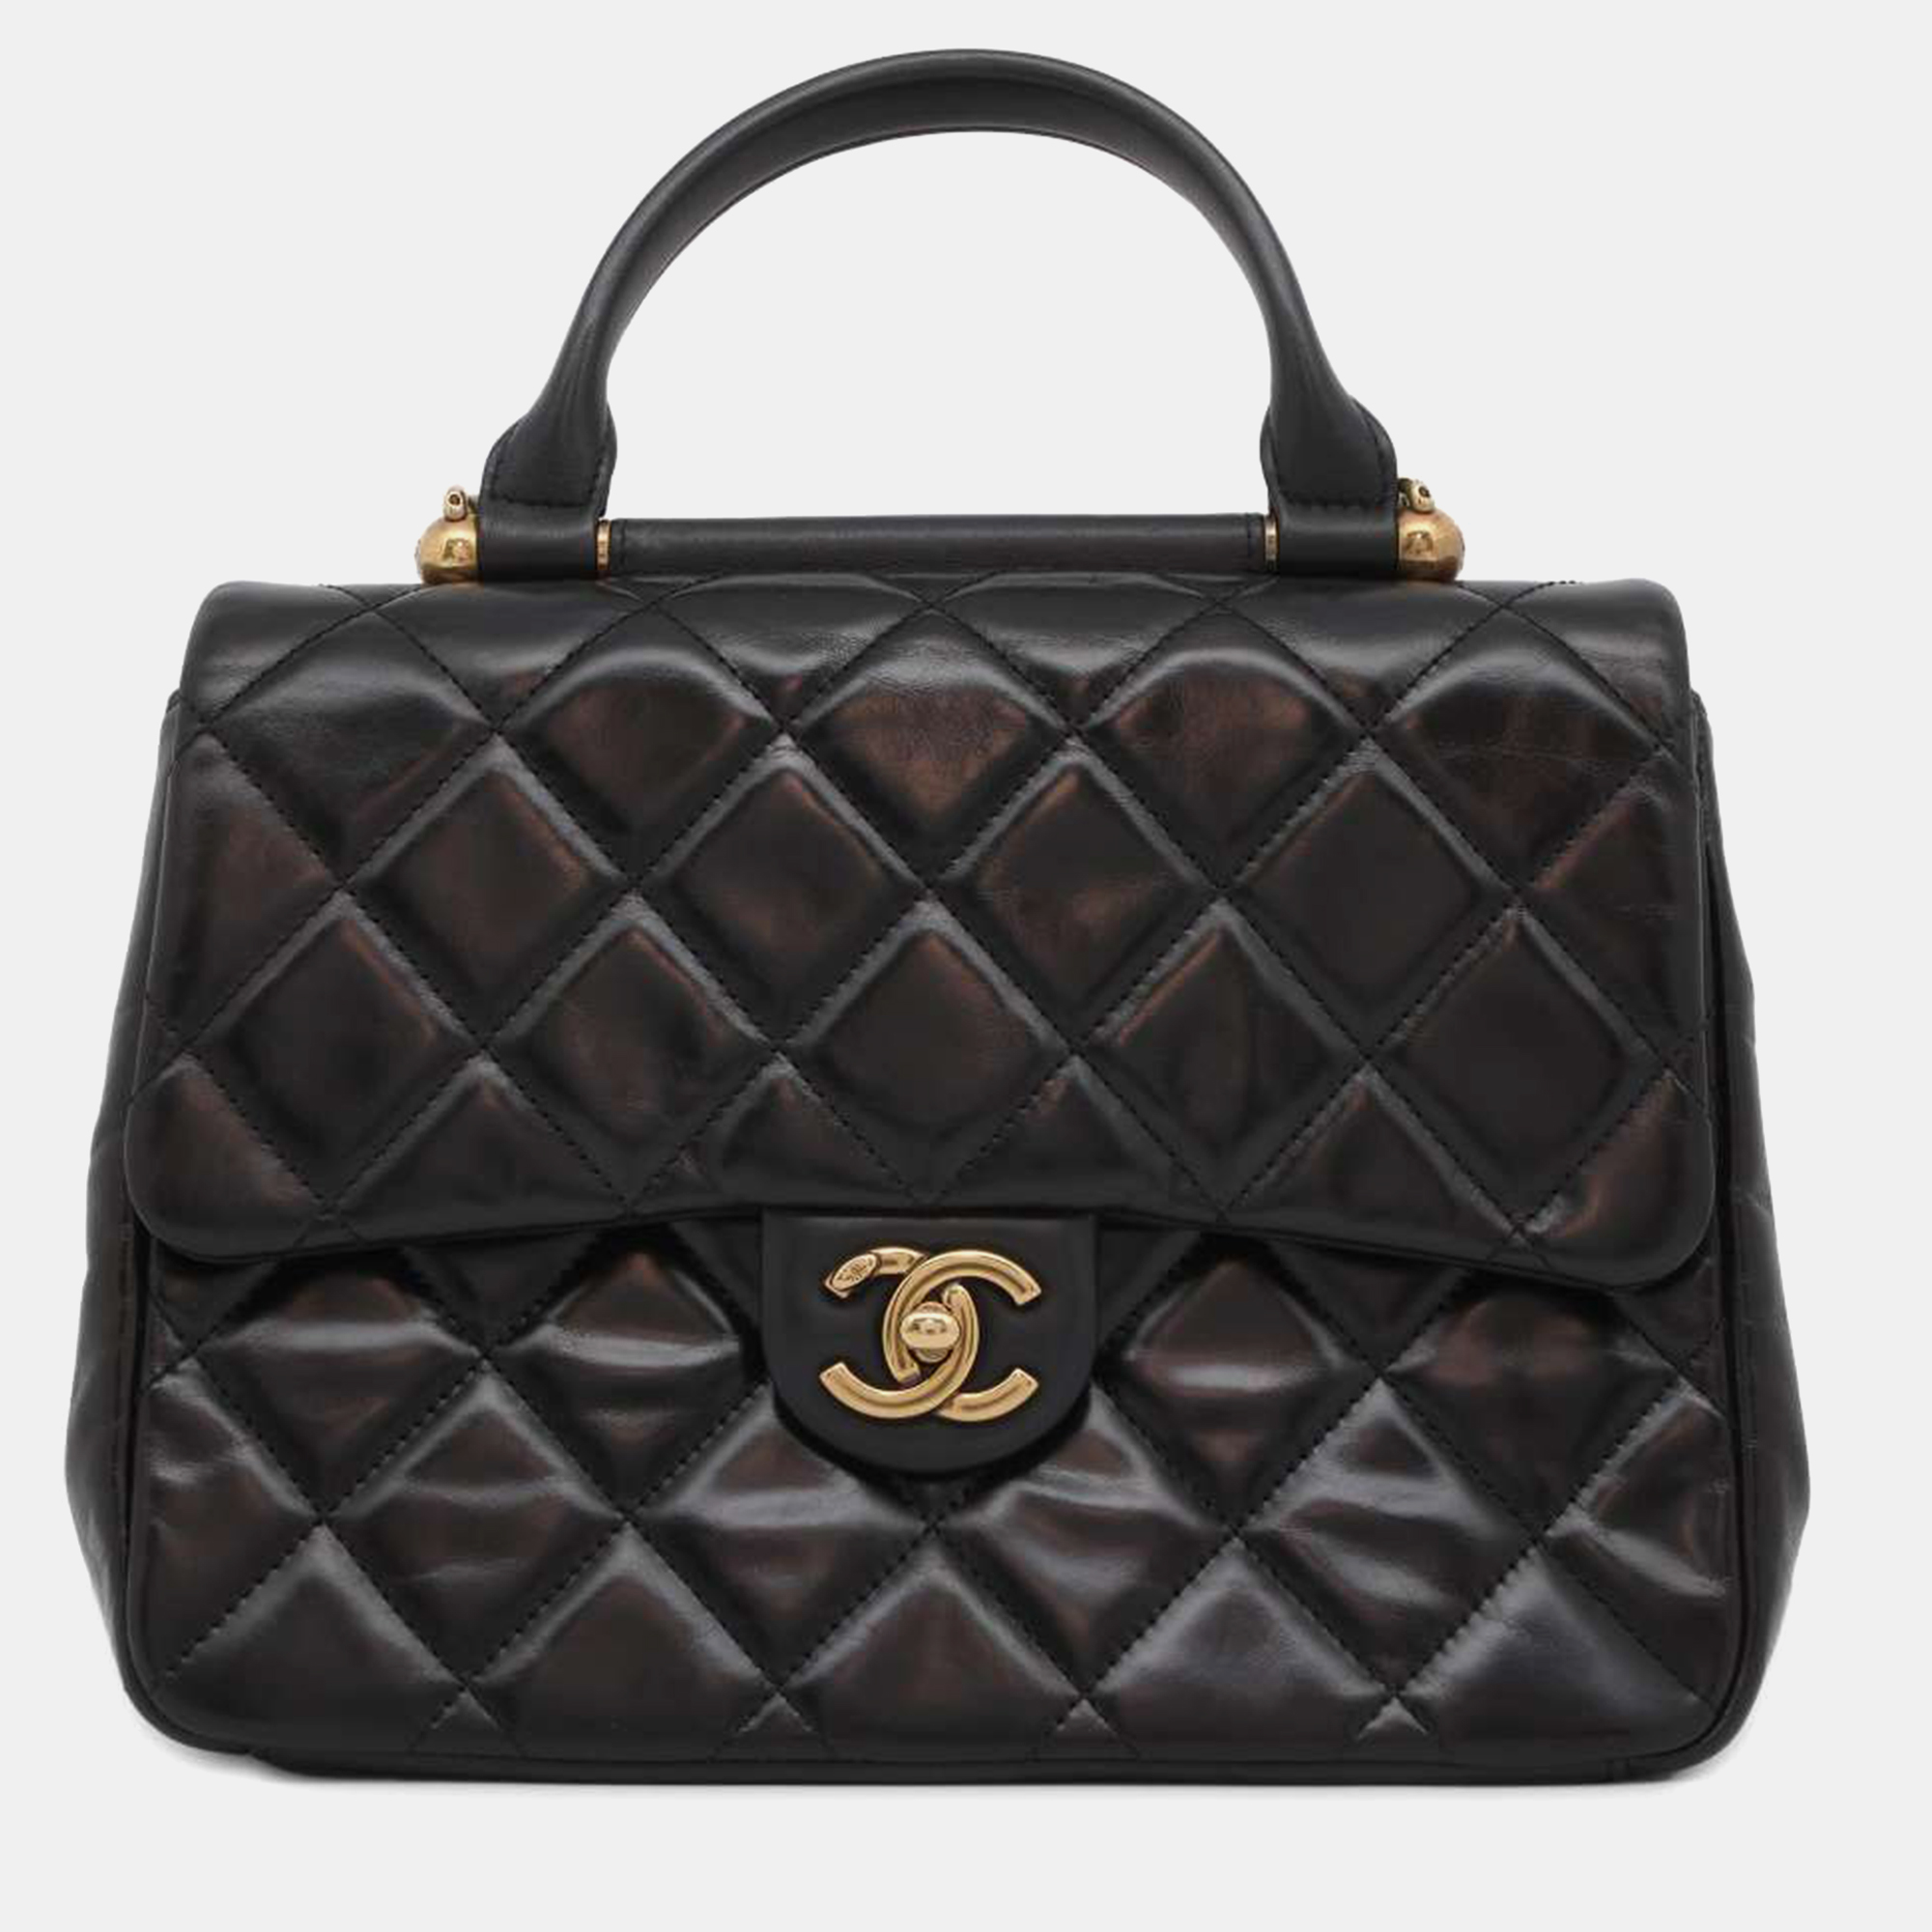 Chanel black leather top handle shoulder bag